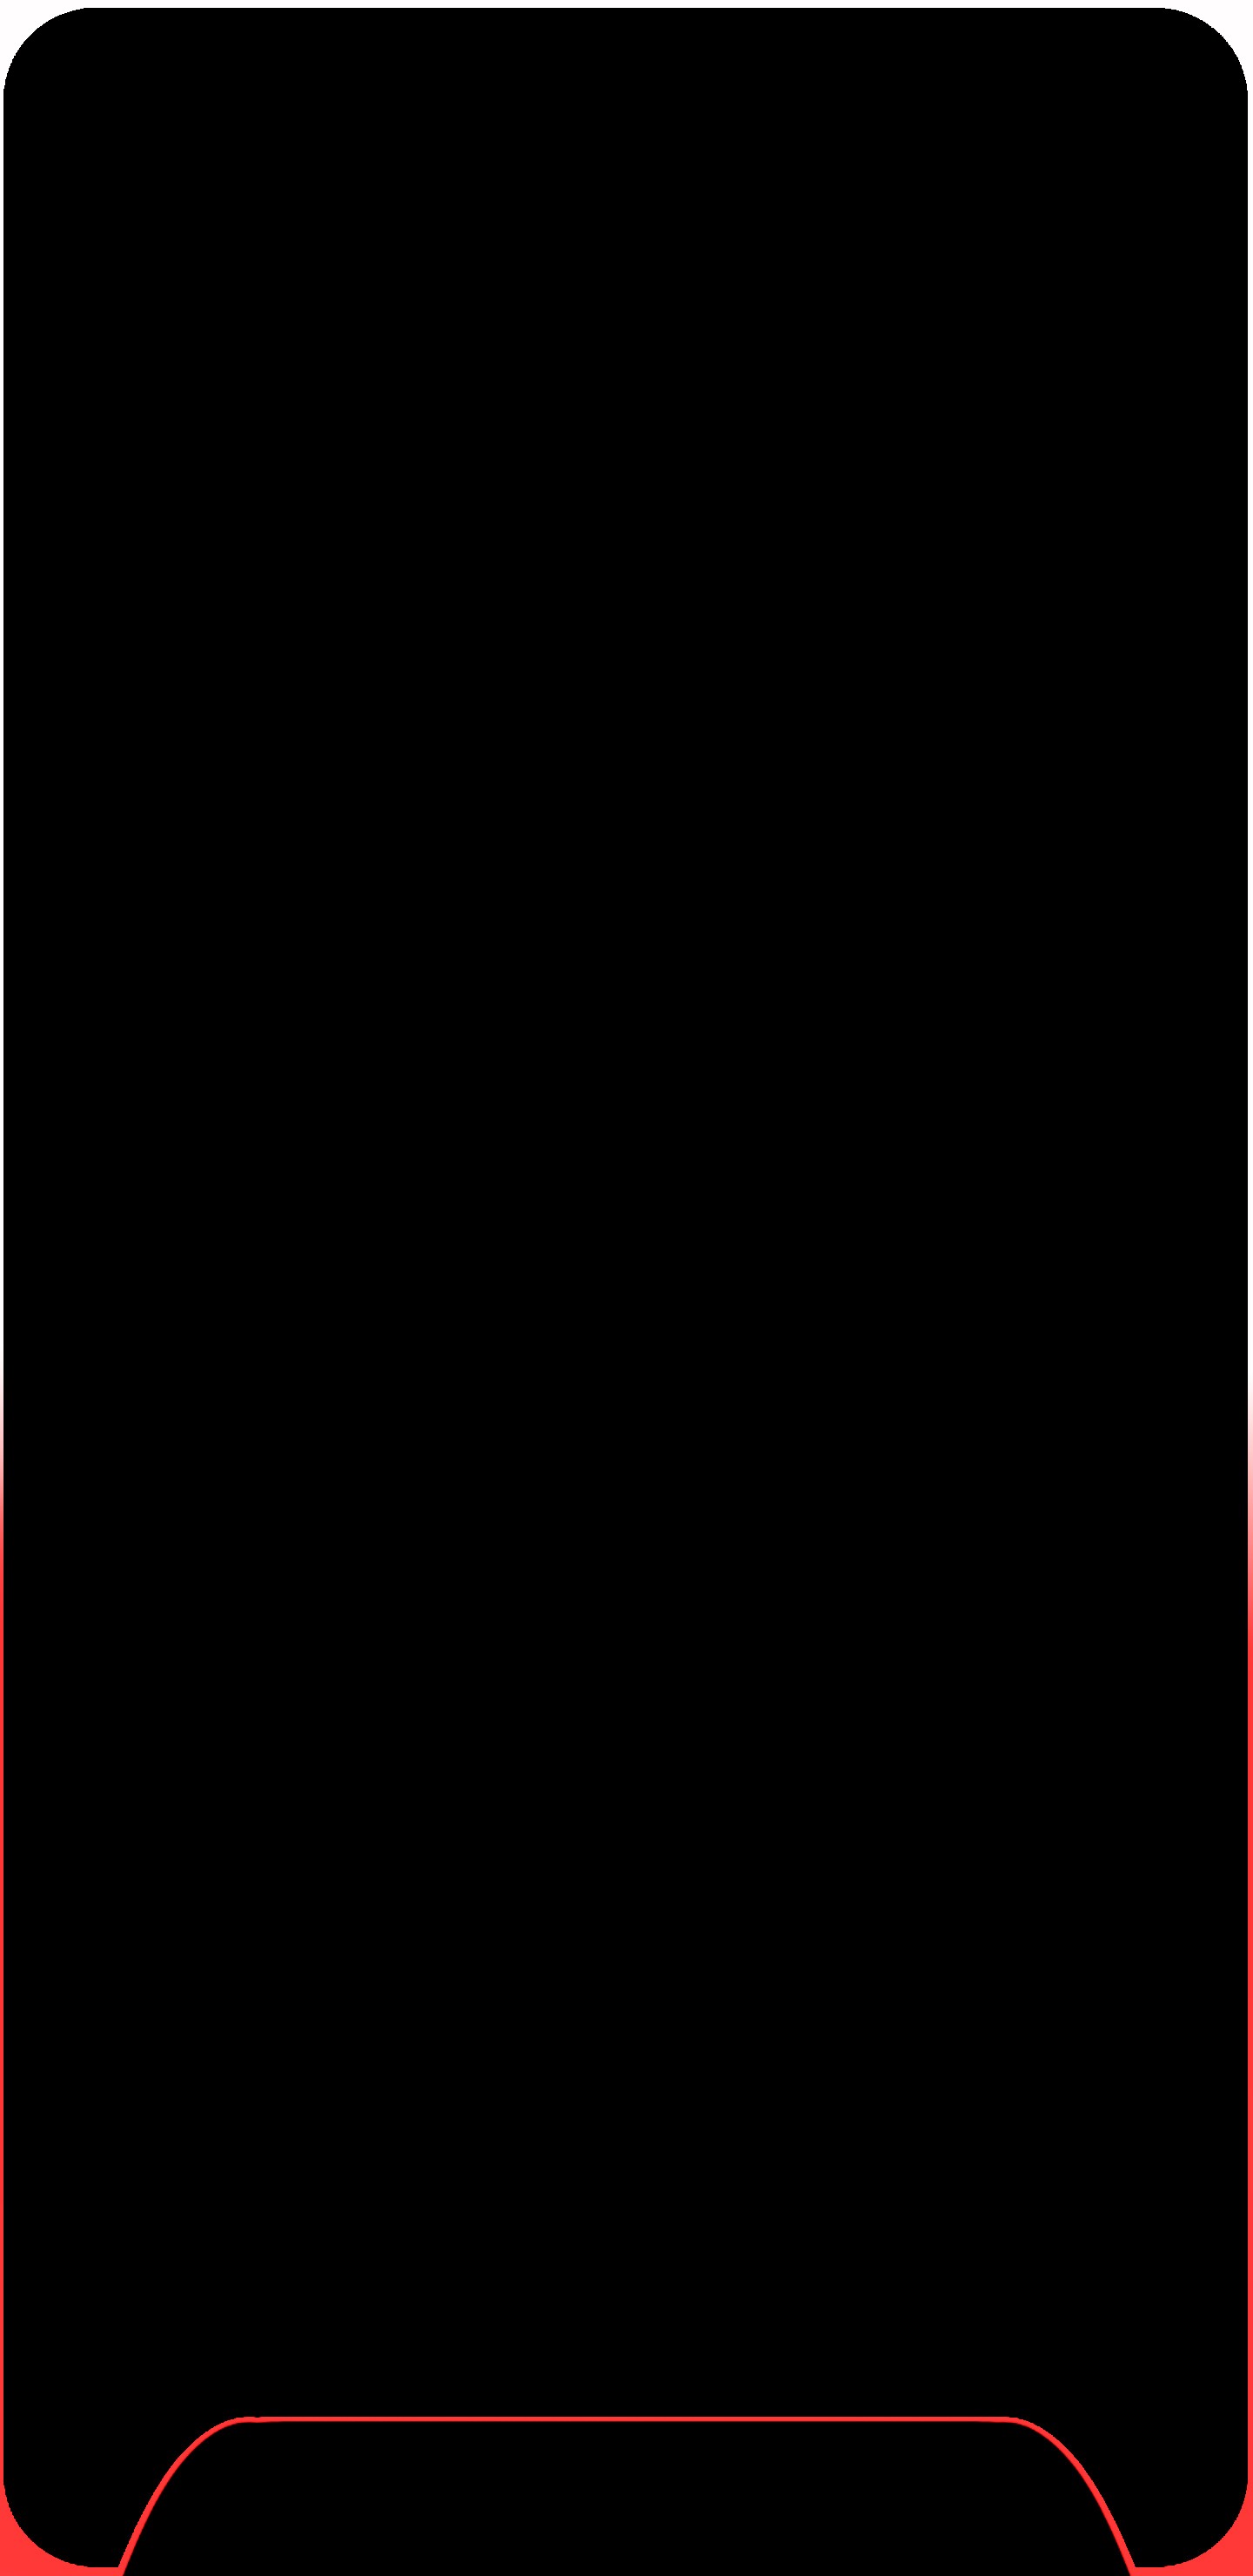 galaxie s8 wallpaper,schwarz,rot,text,braun,dunkelheit